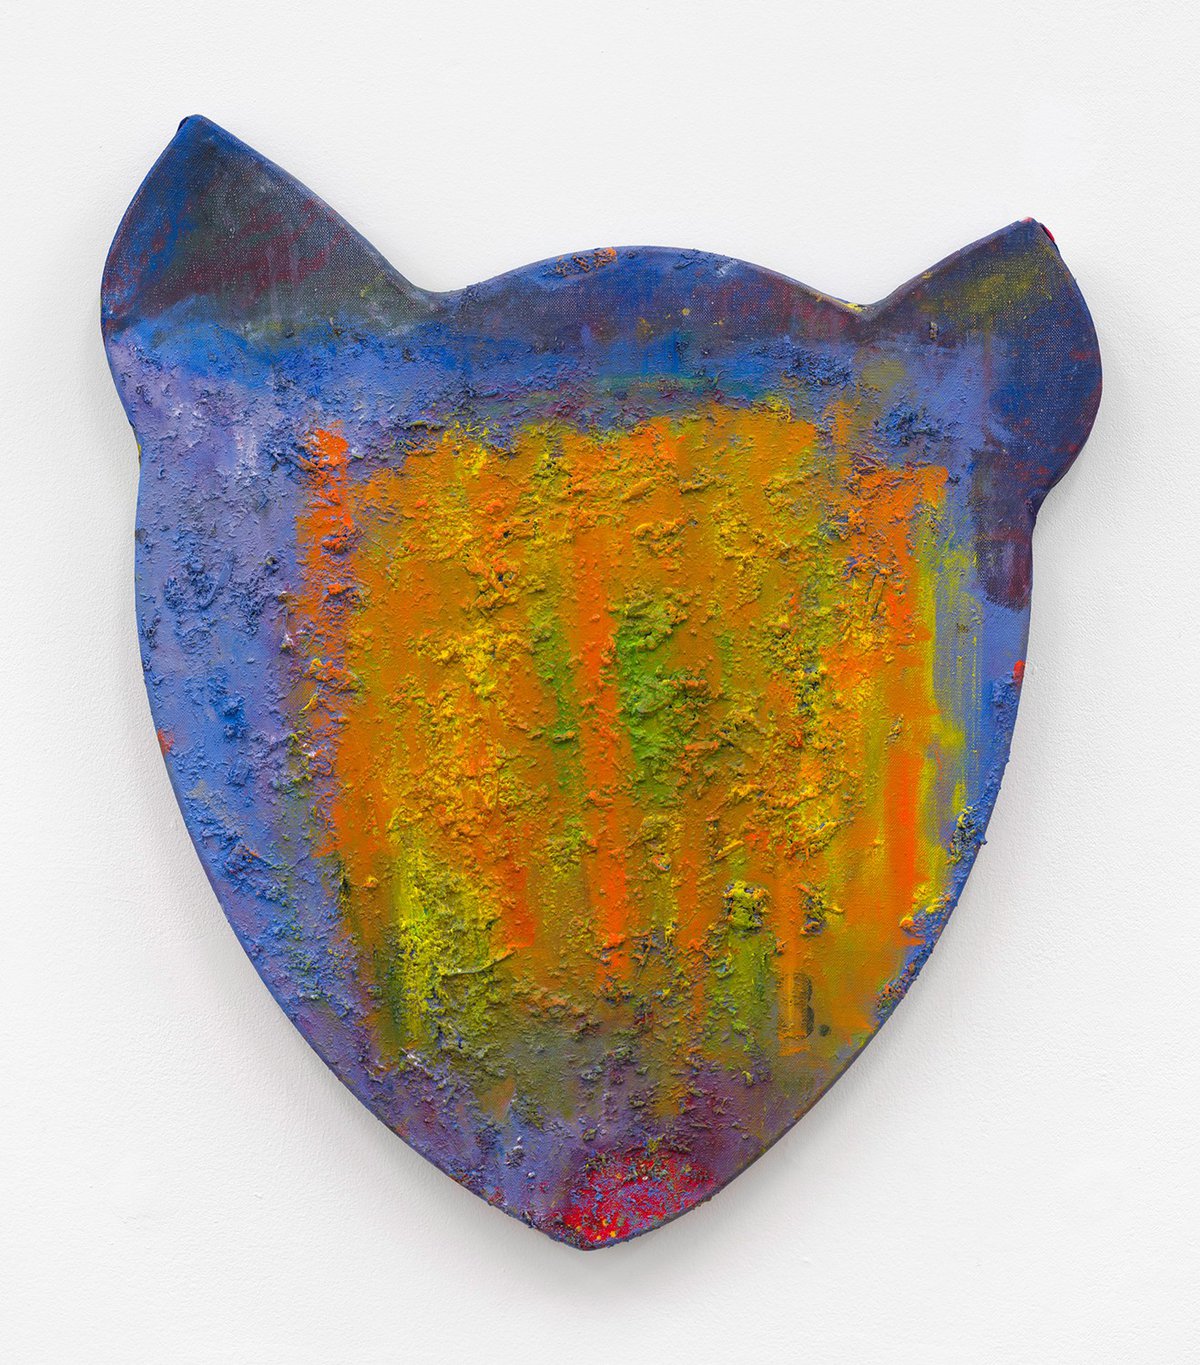 Franz AmannNo.3, 2014Oil, sawdust and glue on shaped canvas88 x 74 x 5 cm